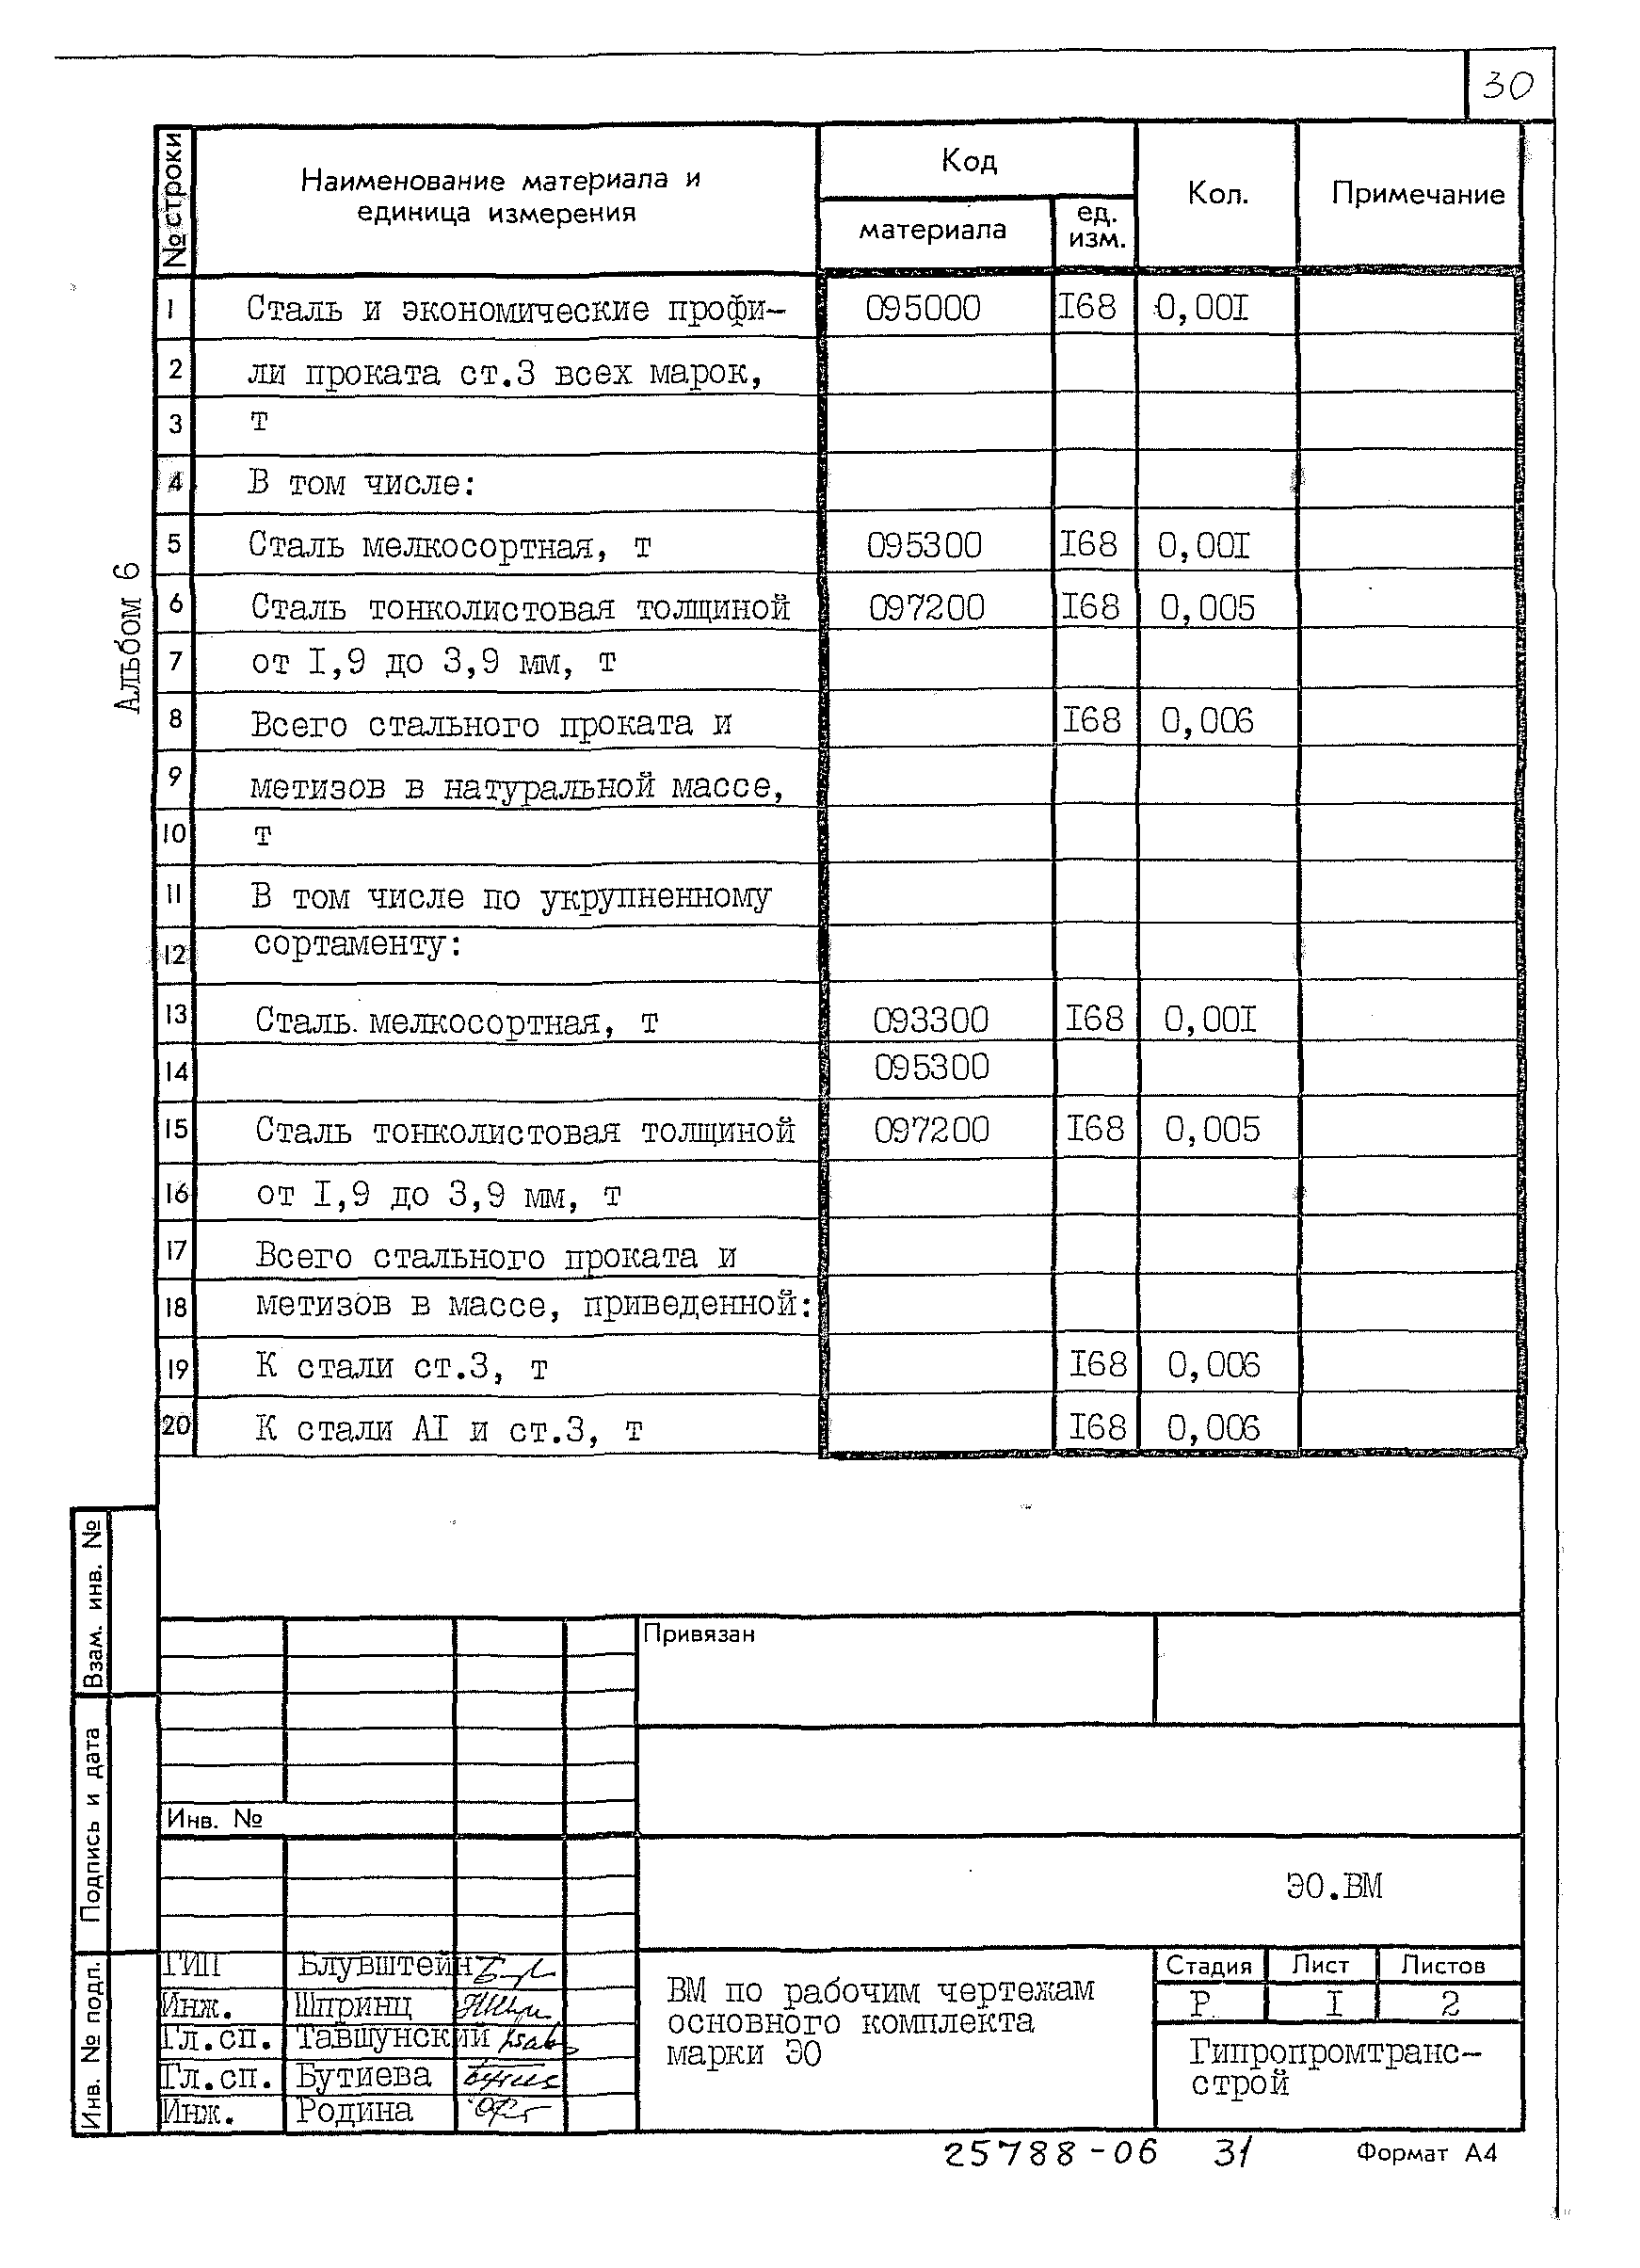 Типовой проект 709-9-112.91